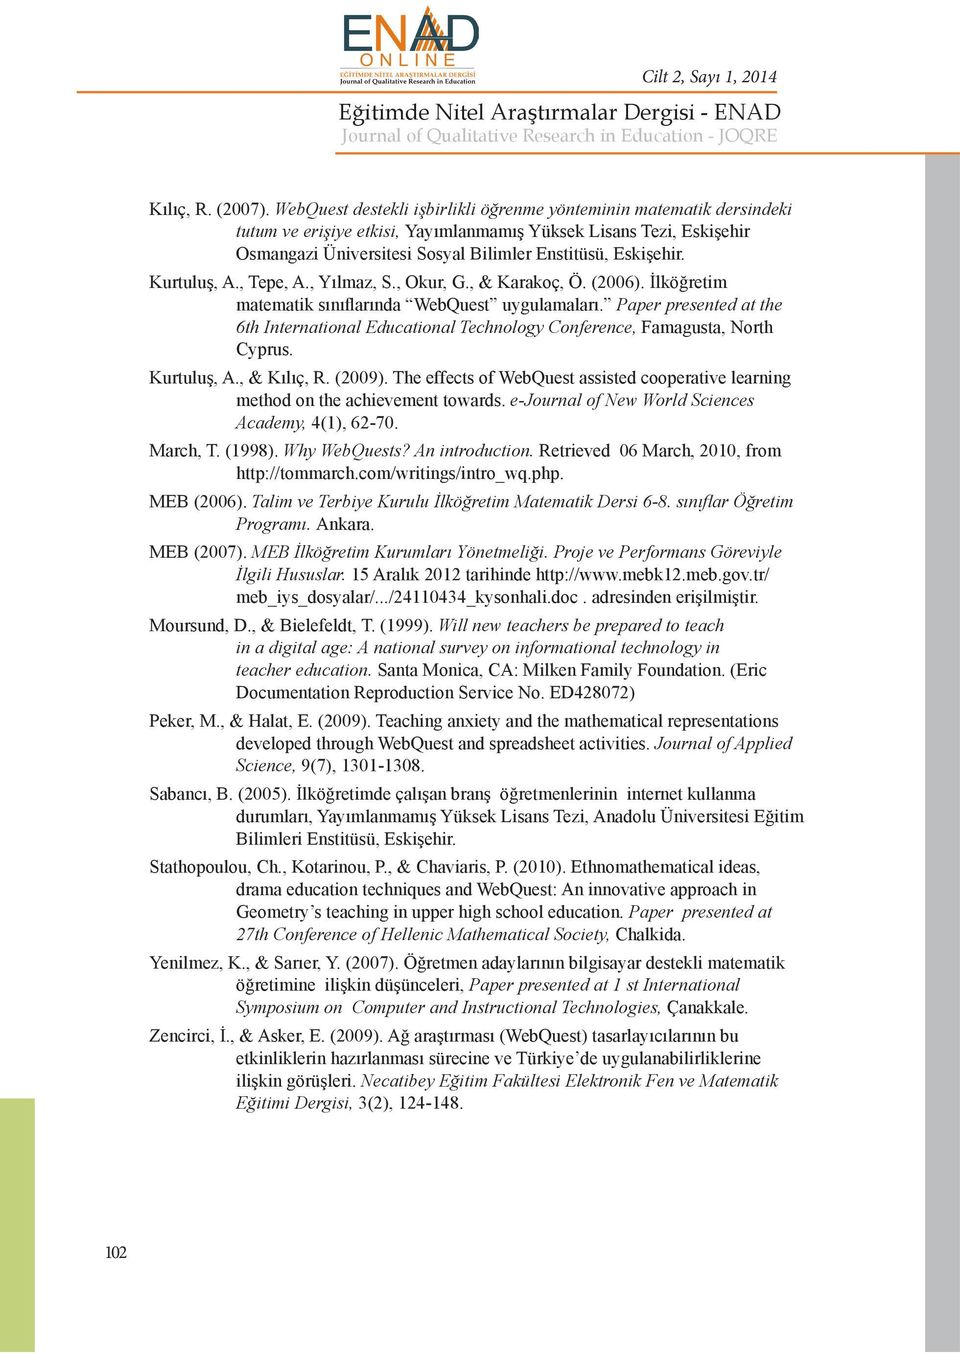 Kurtuluş, A., Tepe, A., Yılmaz, S., Okur, G., & Karakoç, Ö. (2006). İlköğretim matematik sınıflarında WebQuest uygulamaları.